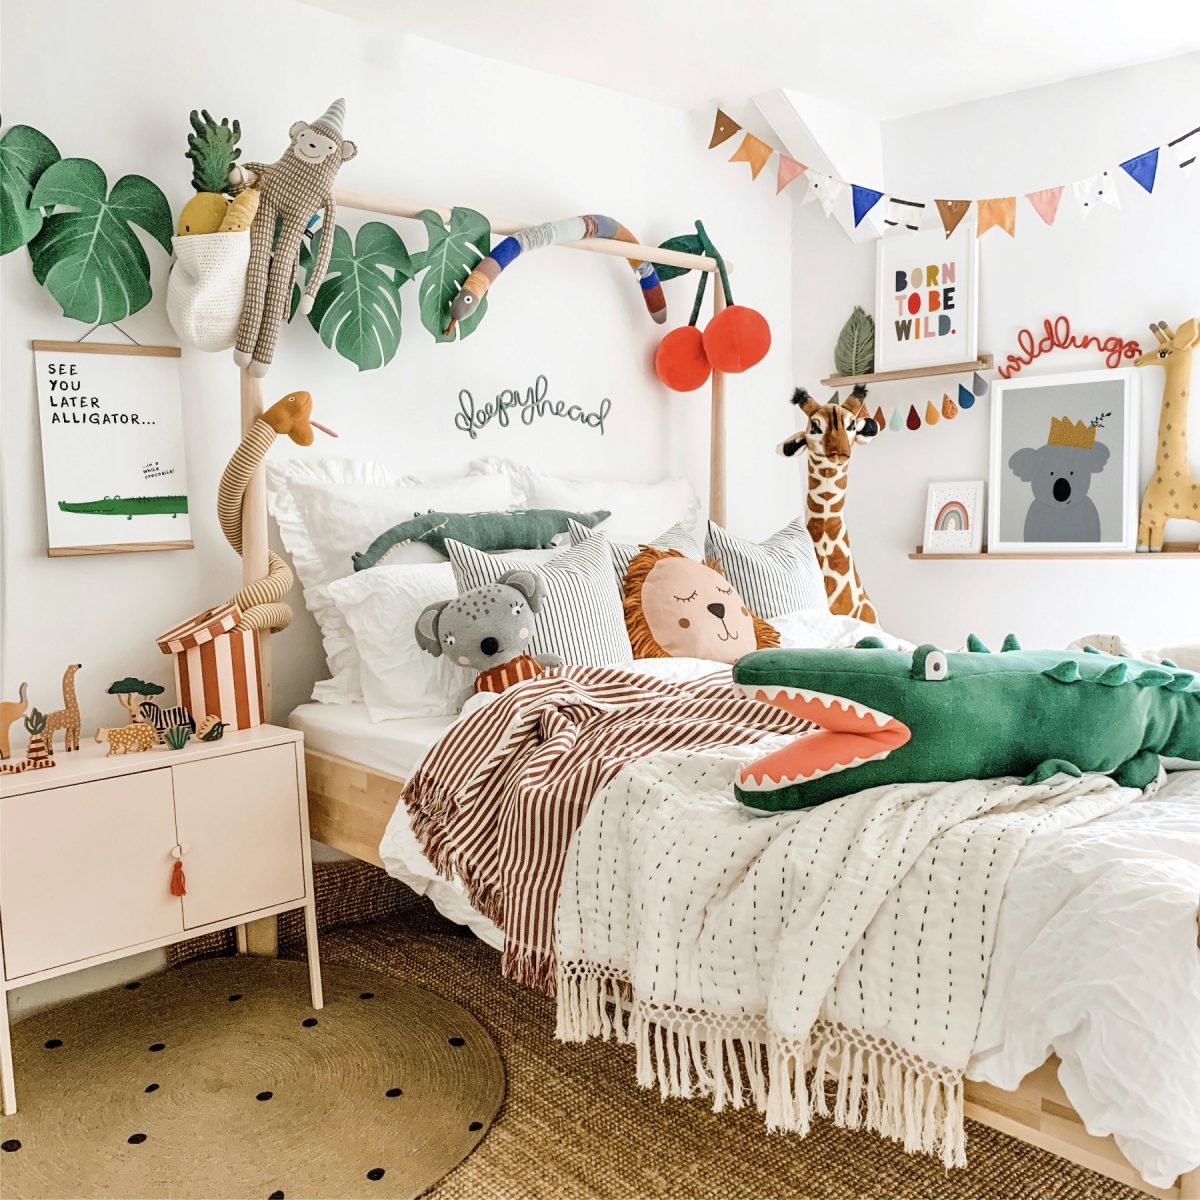 Fantasyroom Blog: Die schönsten Kinderzimmer auf Instagram